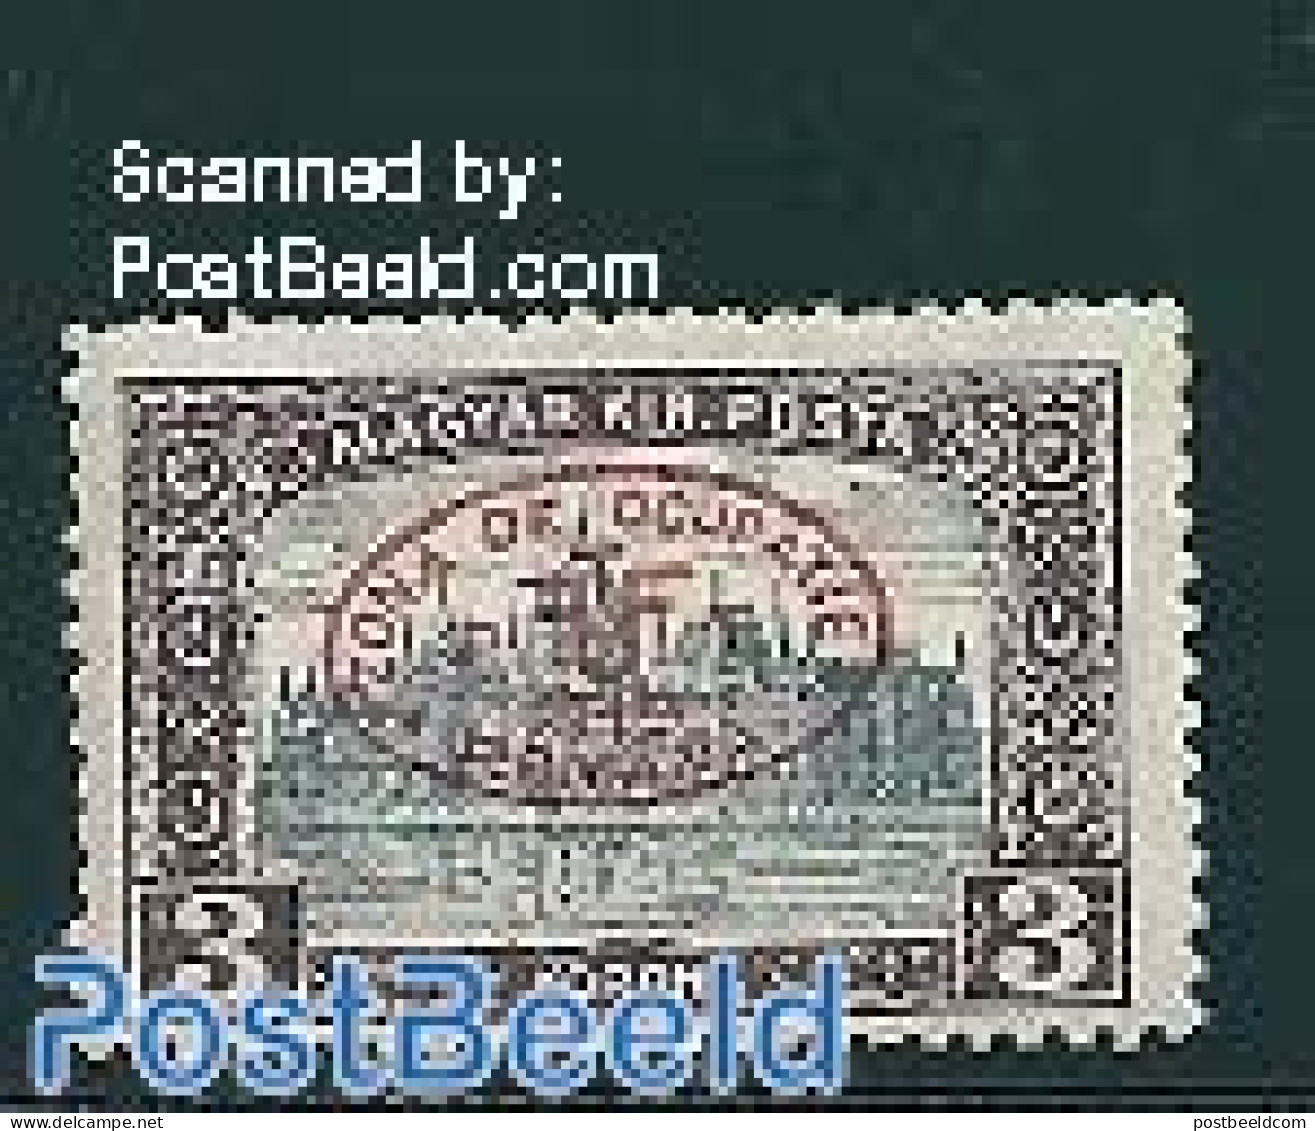 Hungary 1919 Debrecen, 3Kr, Stamp Out Of Set, Unused (hinged) - Ongebruikt